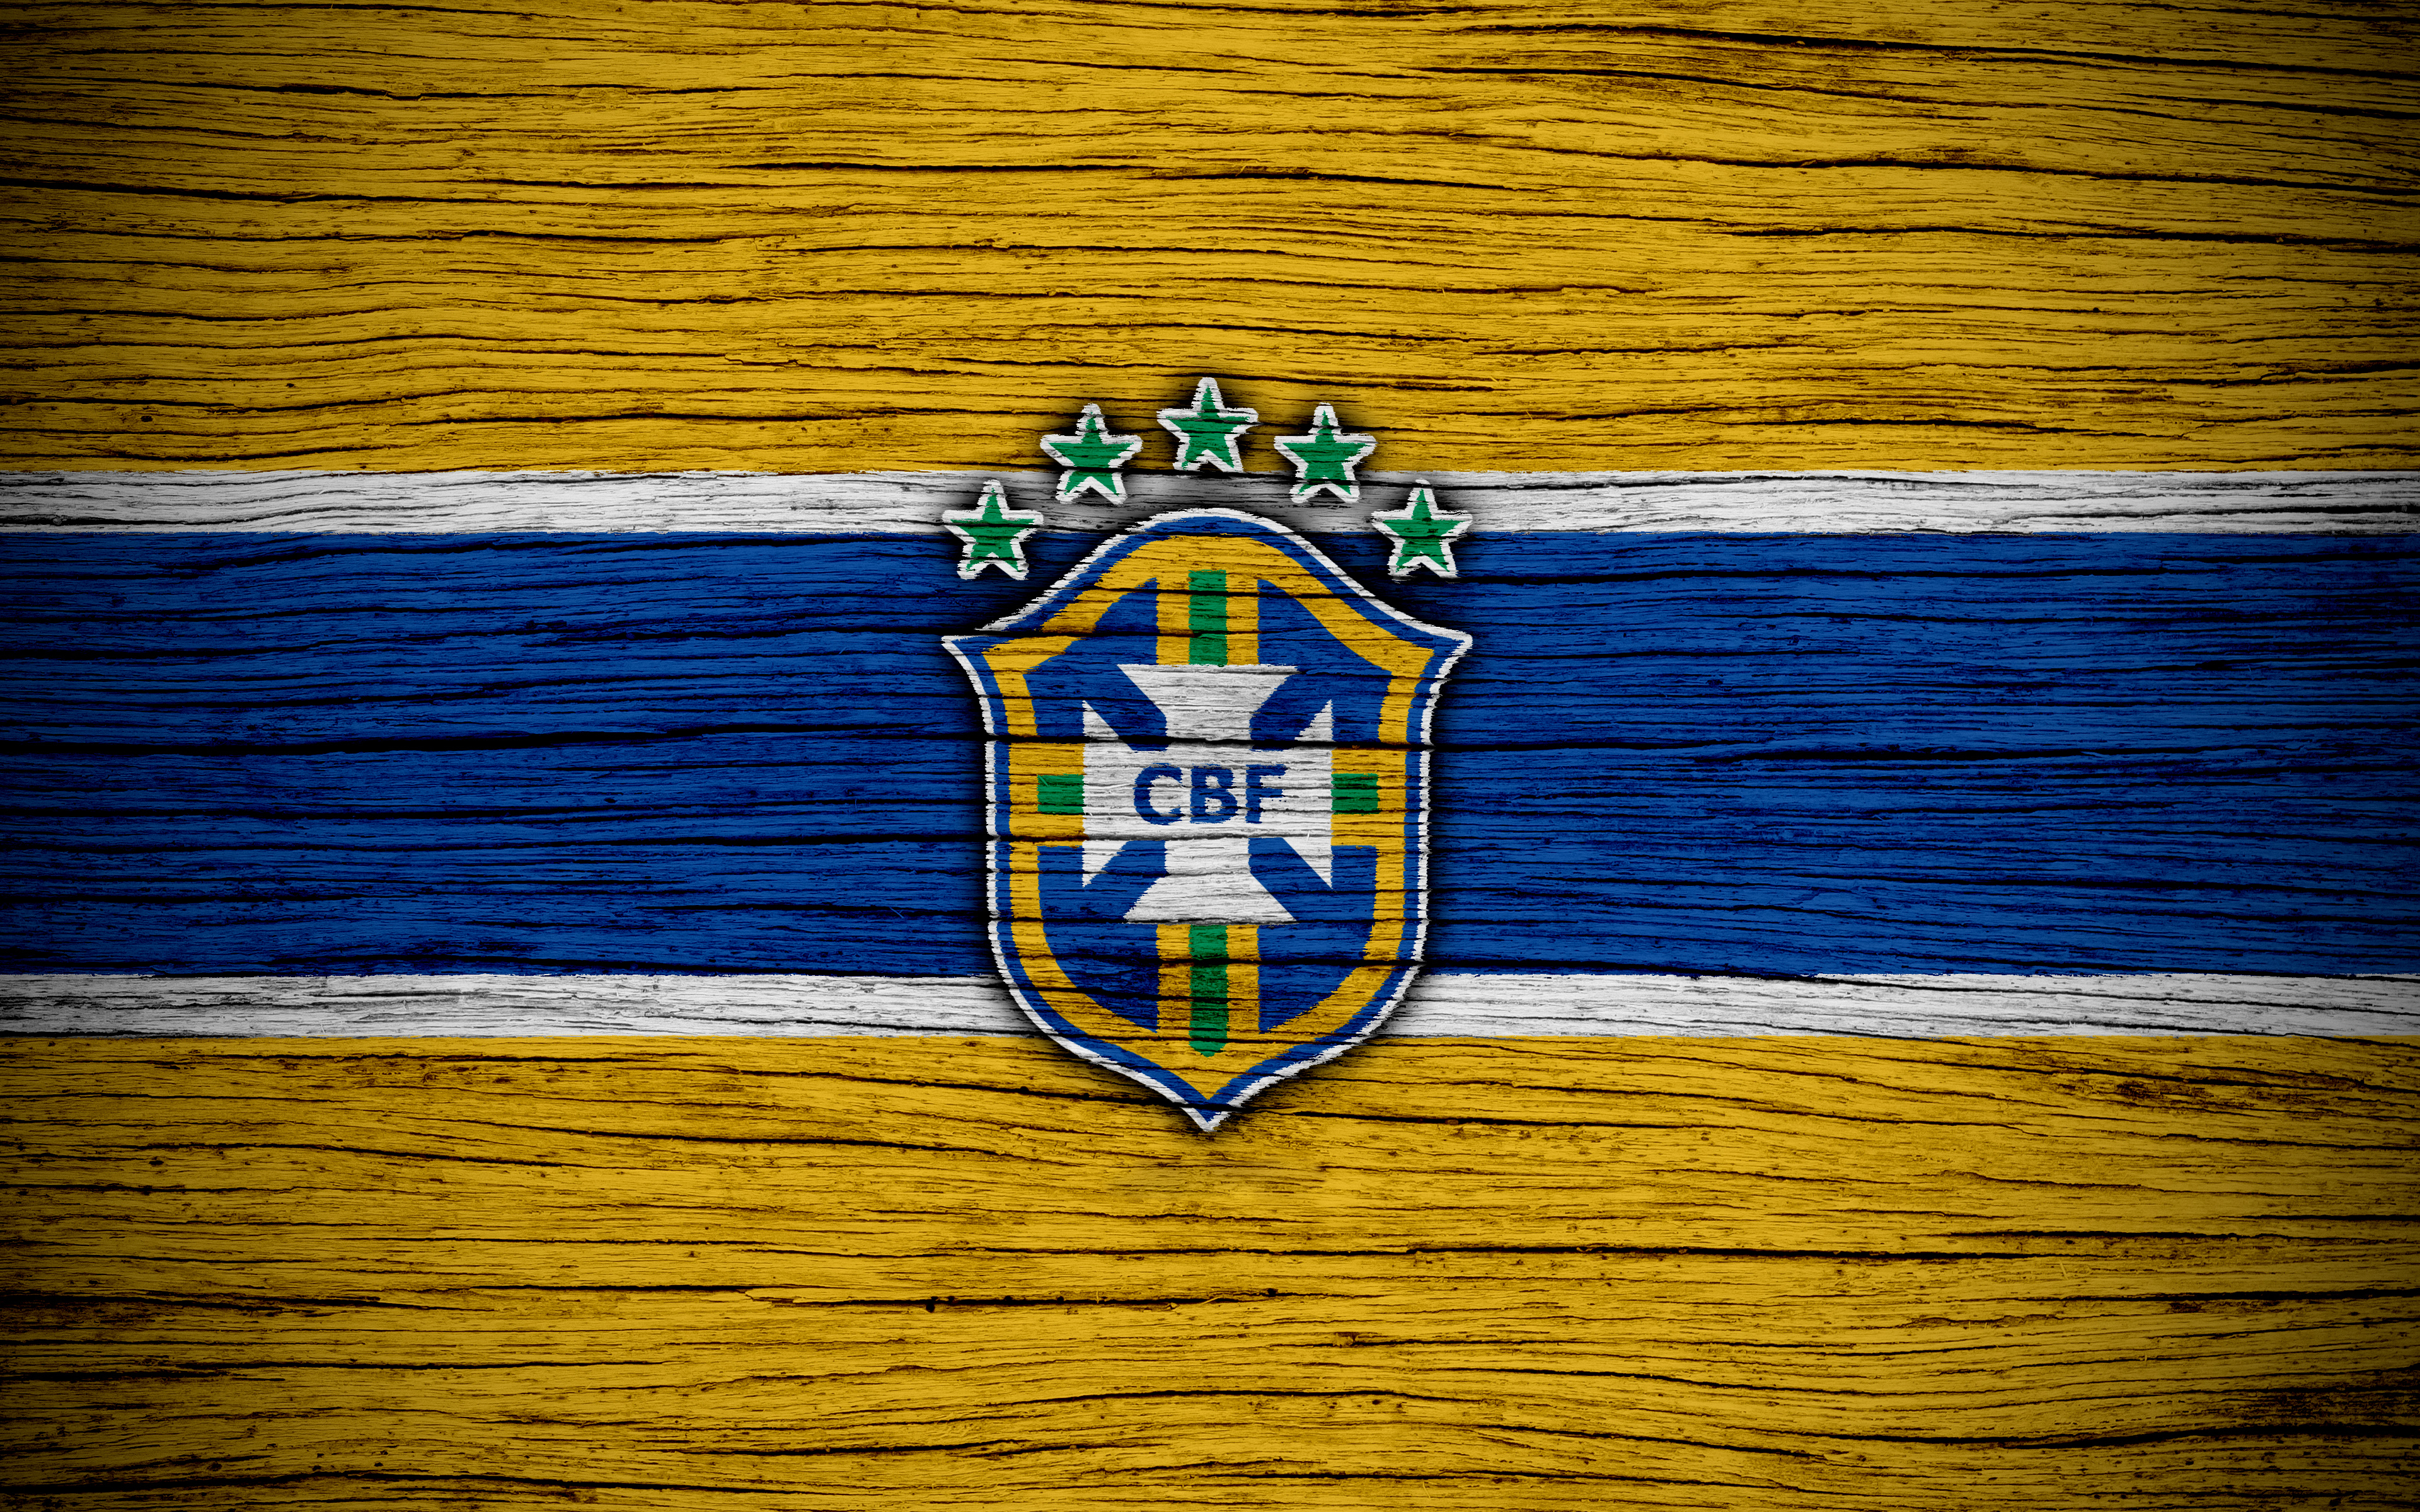 Brazil National Football Team 4k Ultra HD Wallpaper